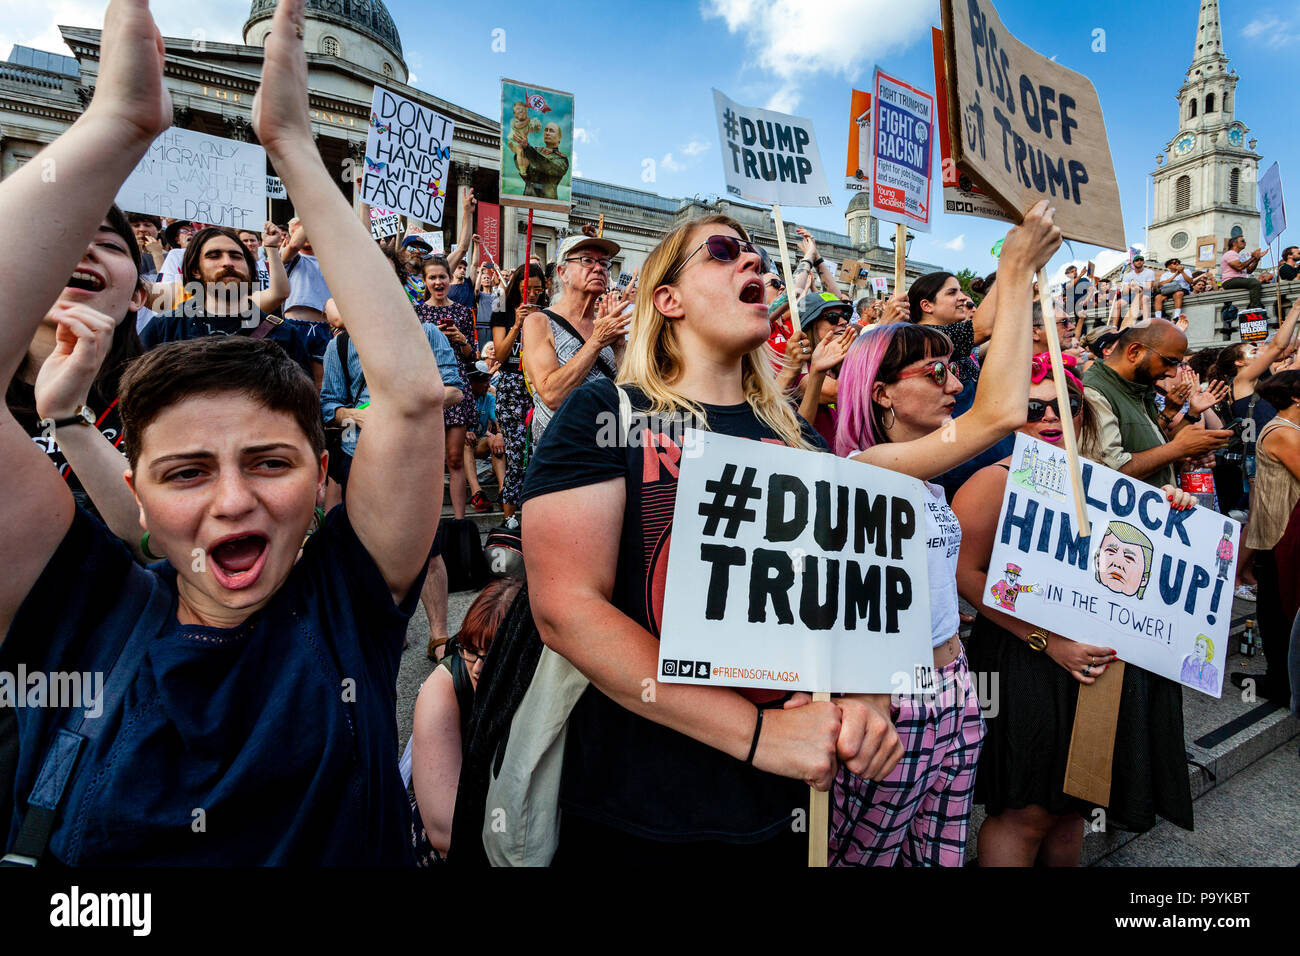 El triunfo contra manifestantes en contra de la visita de los presidentes de EE.UU. al Reino Unido, Trafalgar Square, Londres, Inglaterra Foto de stock